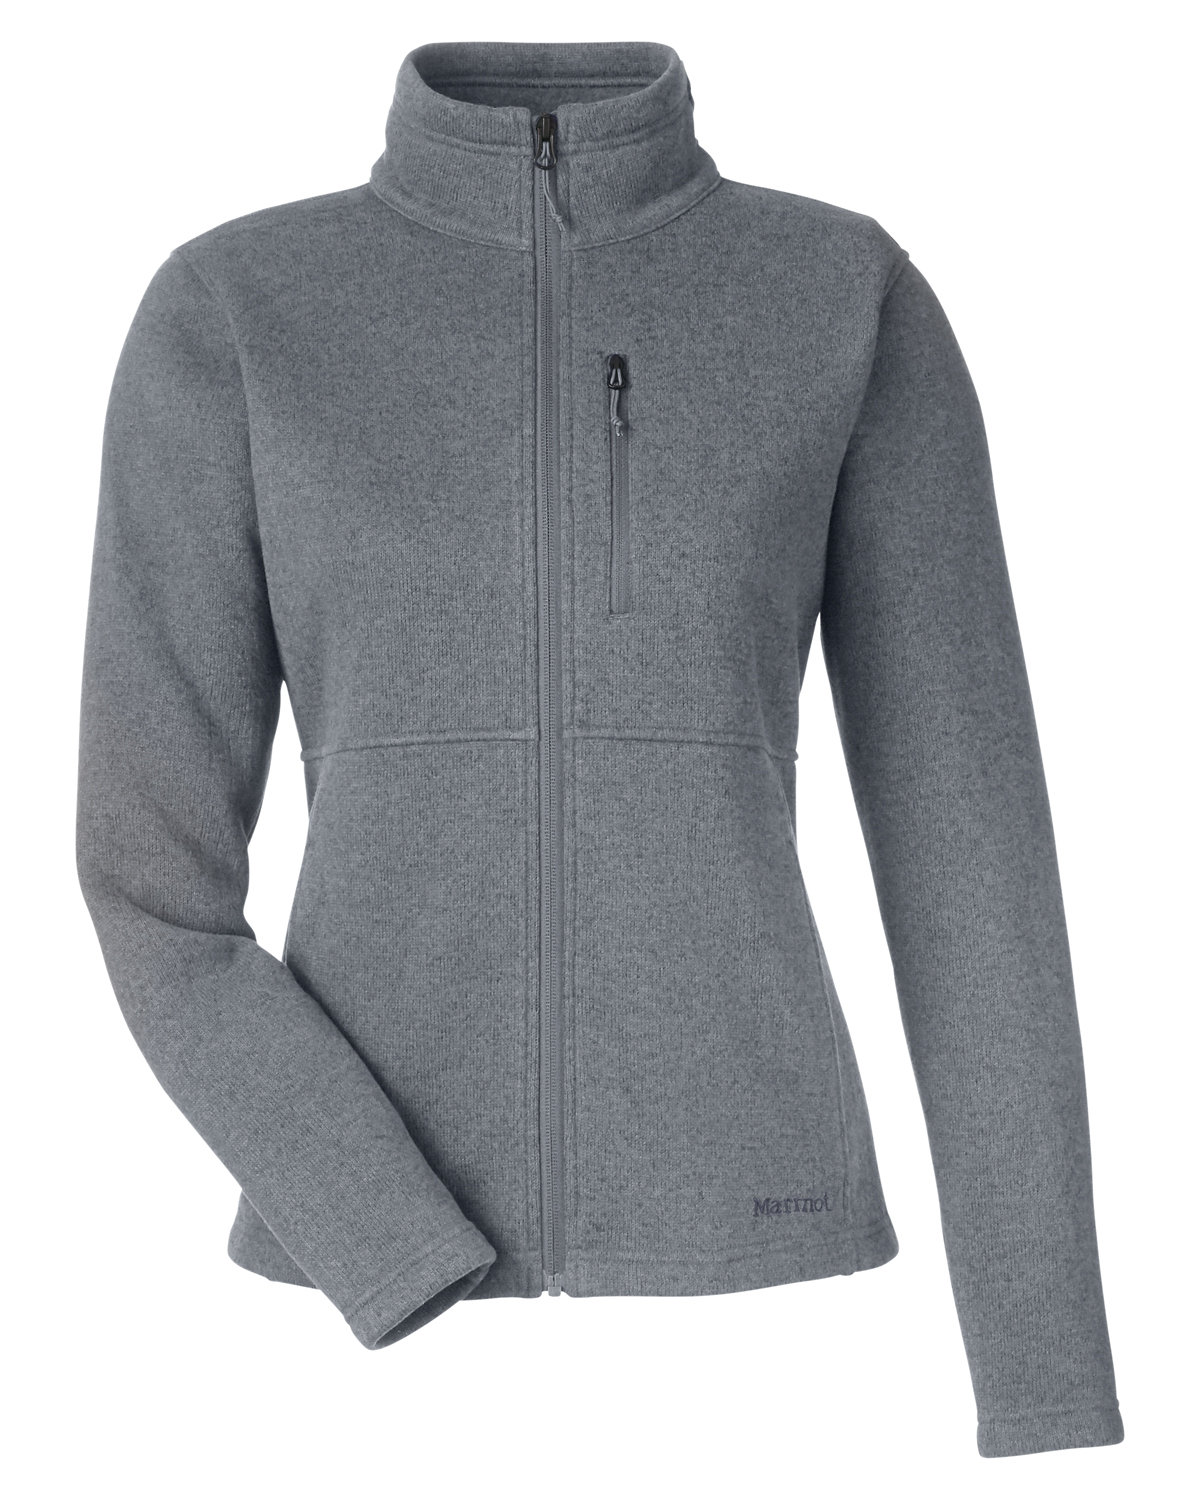 Marmot M14437 - Ladies' Dropline Sweater Fleece Jacket $84.00 - Outerwear